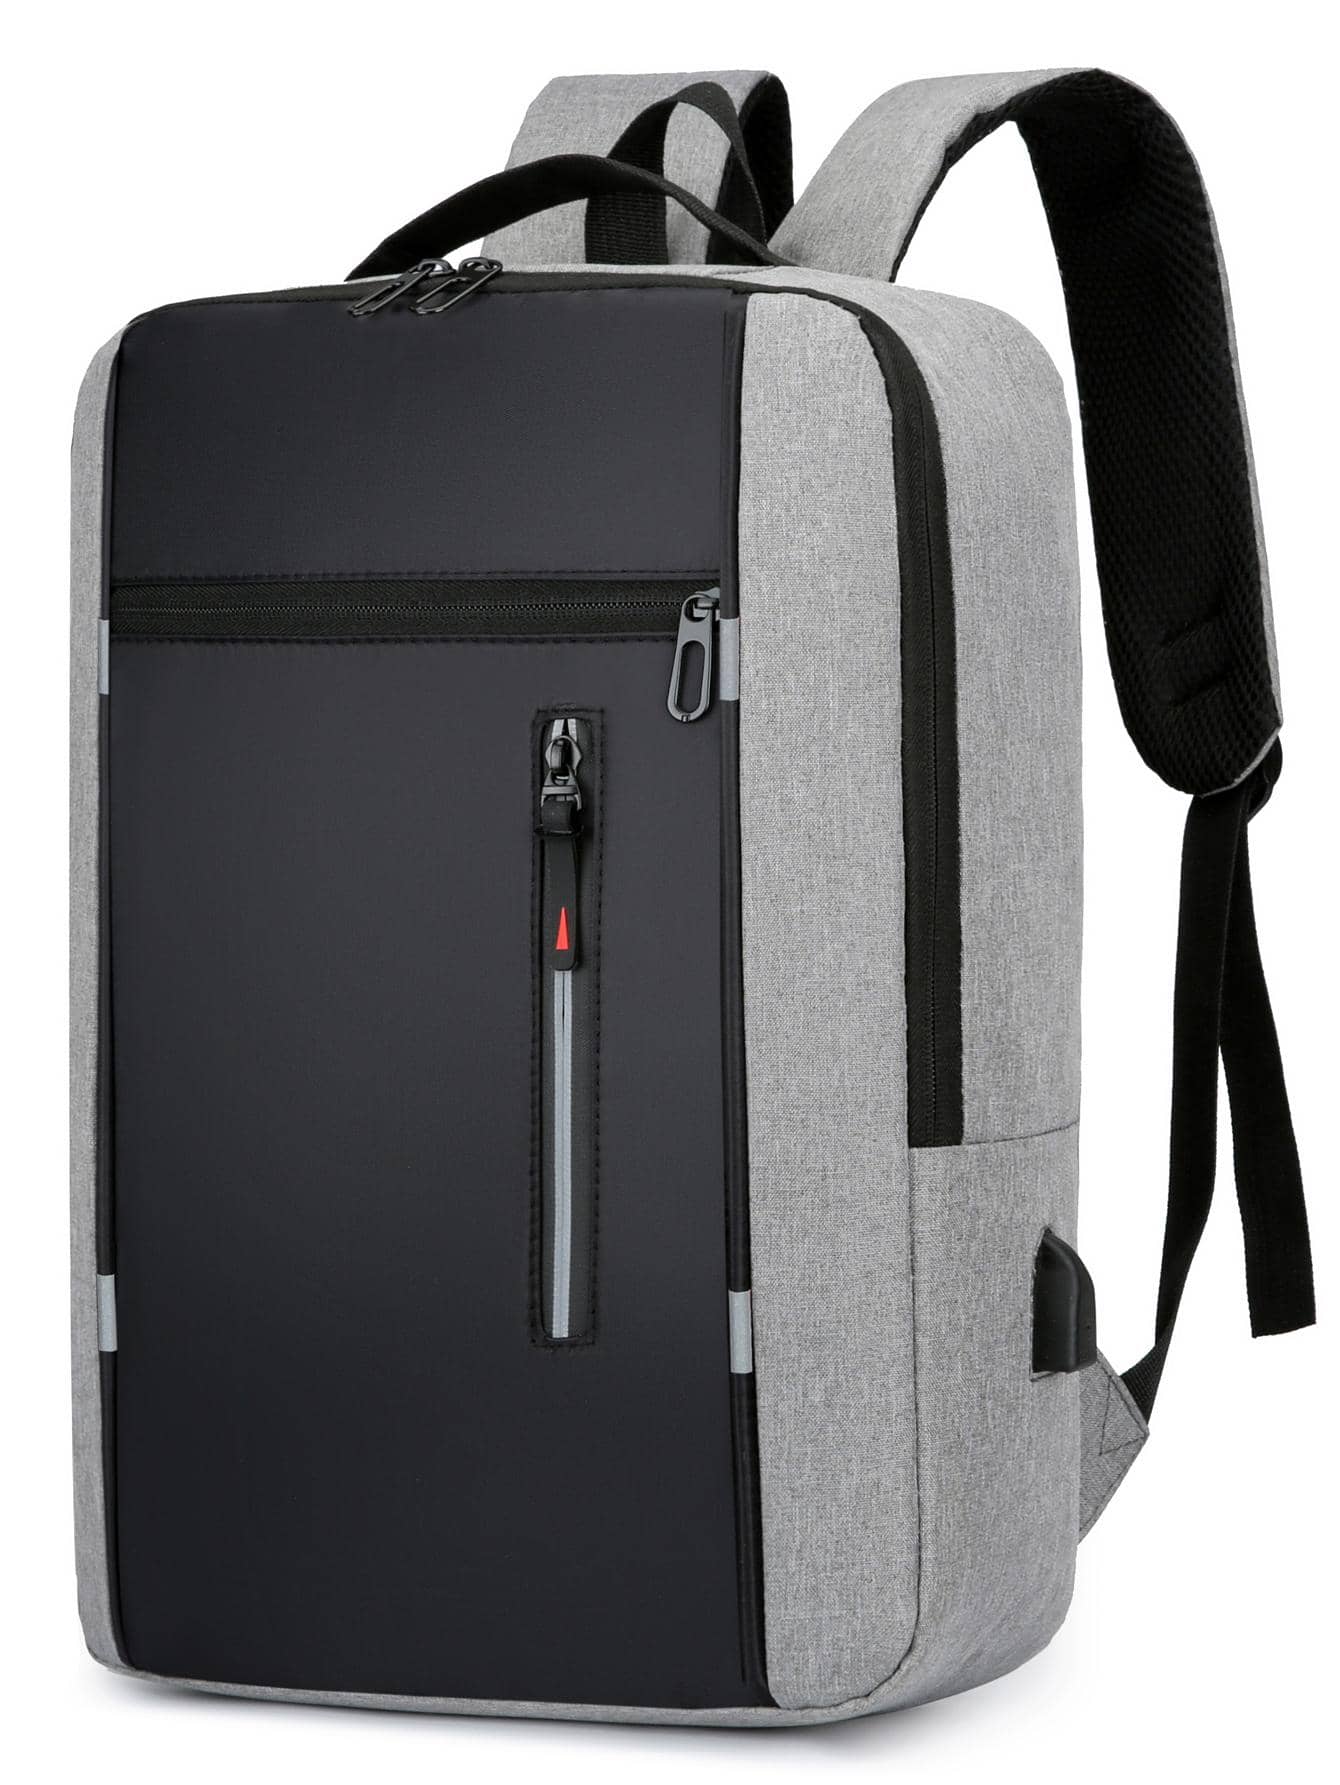 Рюкзак ноутбука Колорблок 15, серый дорожный рюкзак для ноутбука для мужчин и женщин безопасный рюкзак tsa для колледжа и школы 15 6 дюймов с usb портом для зарядки